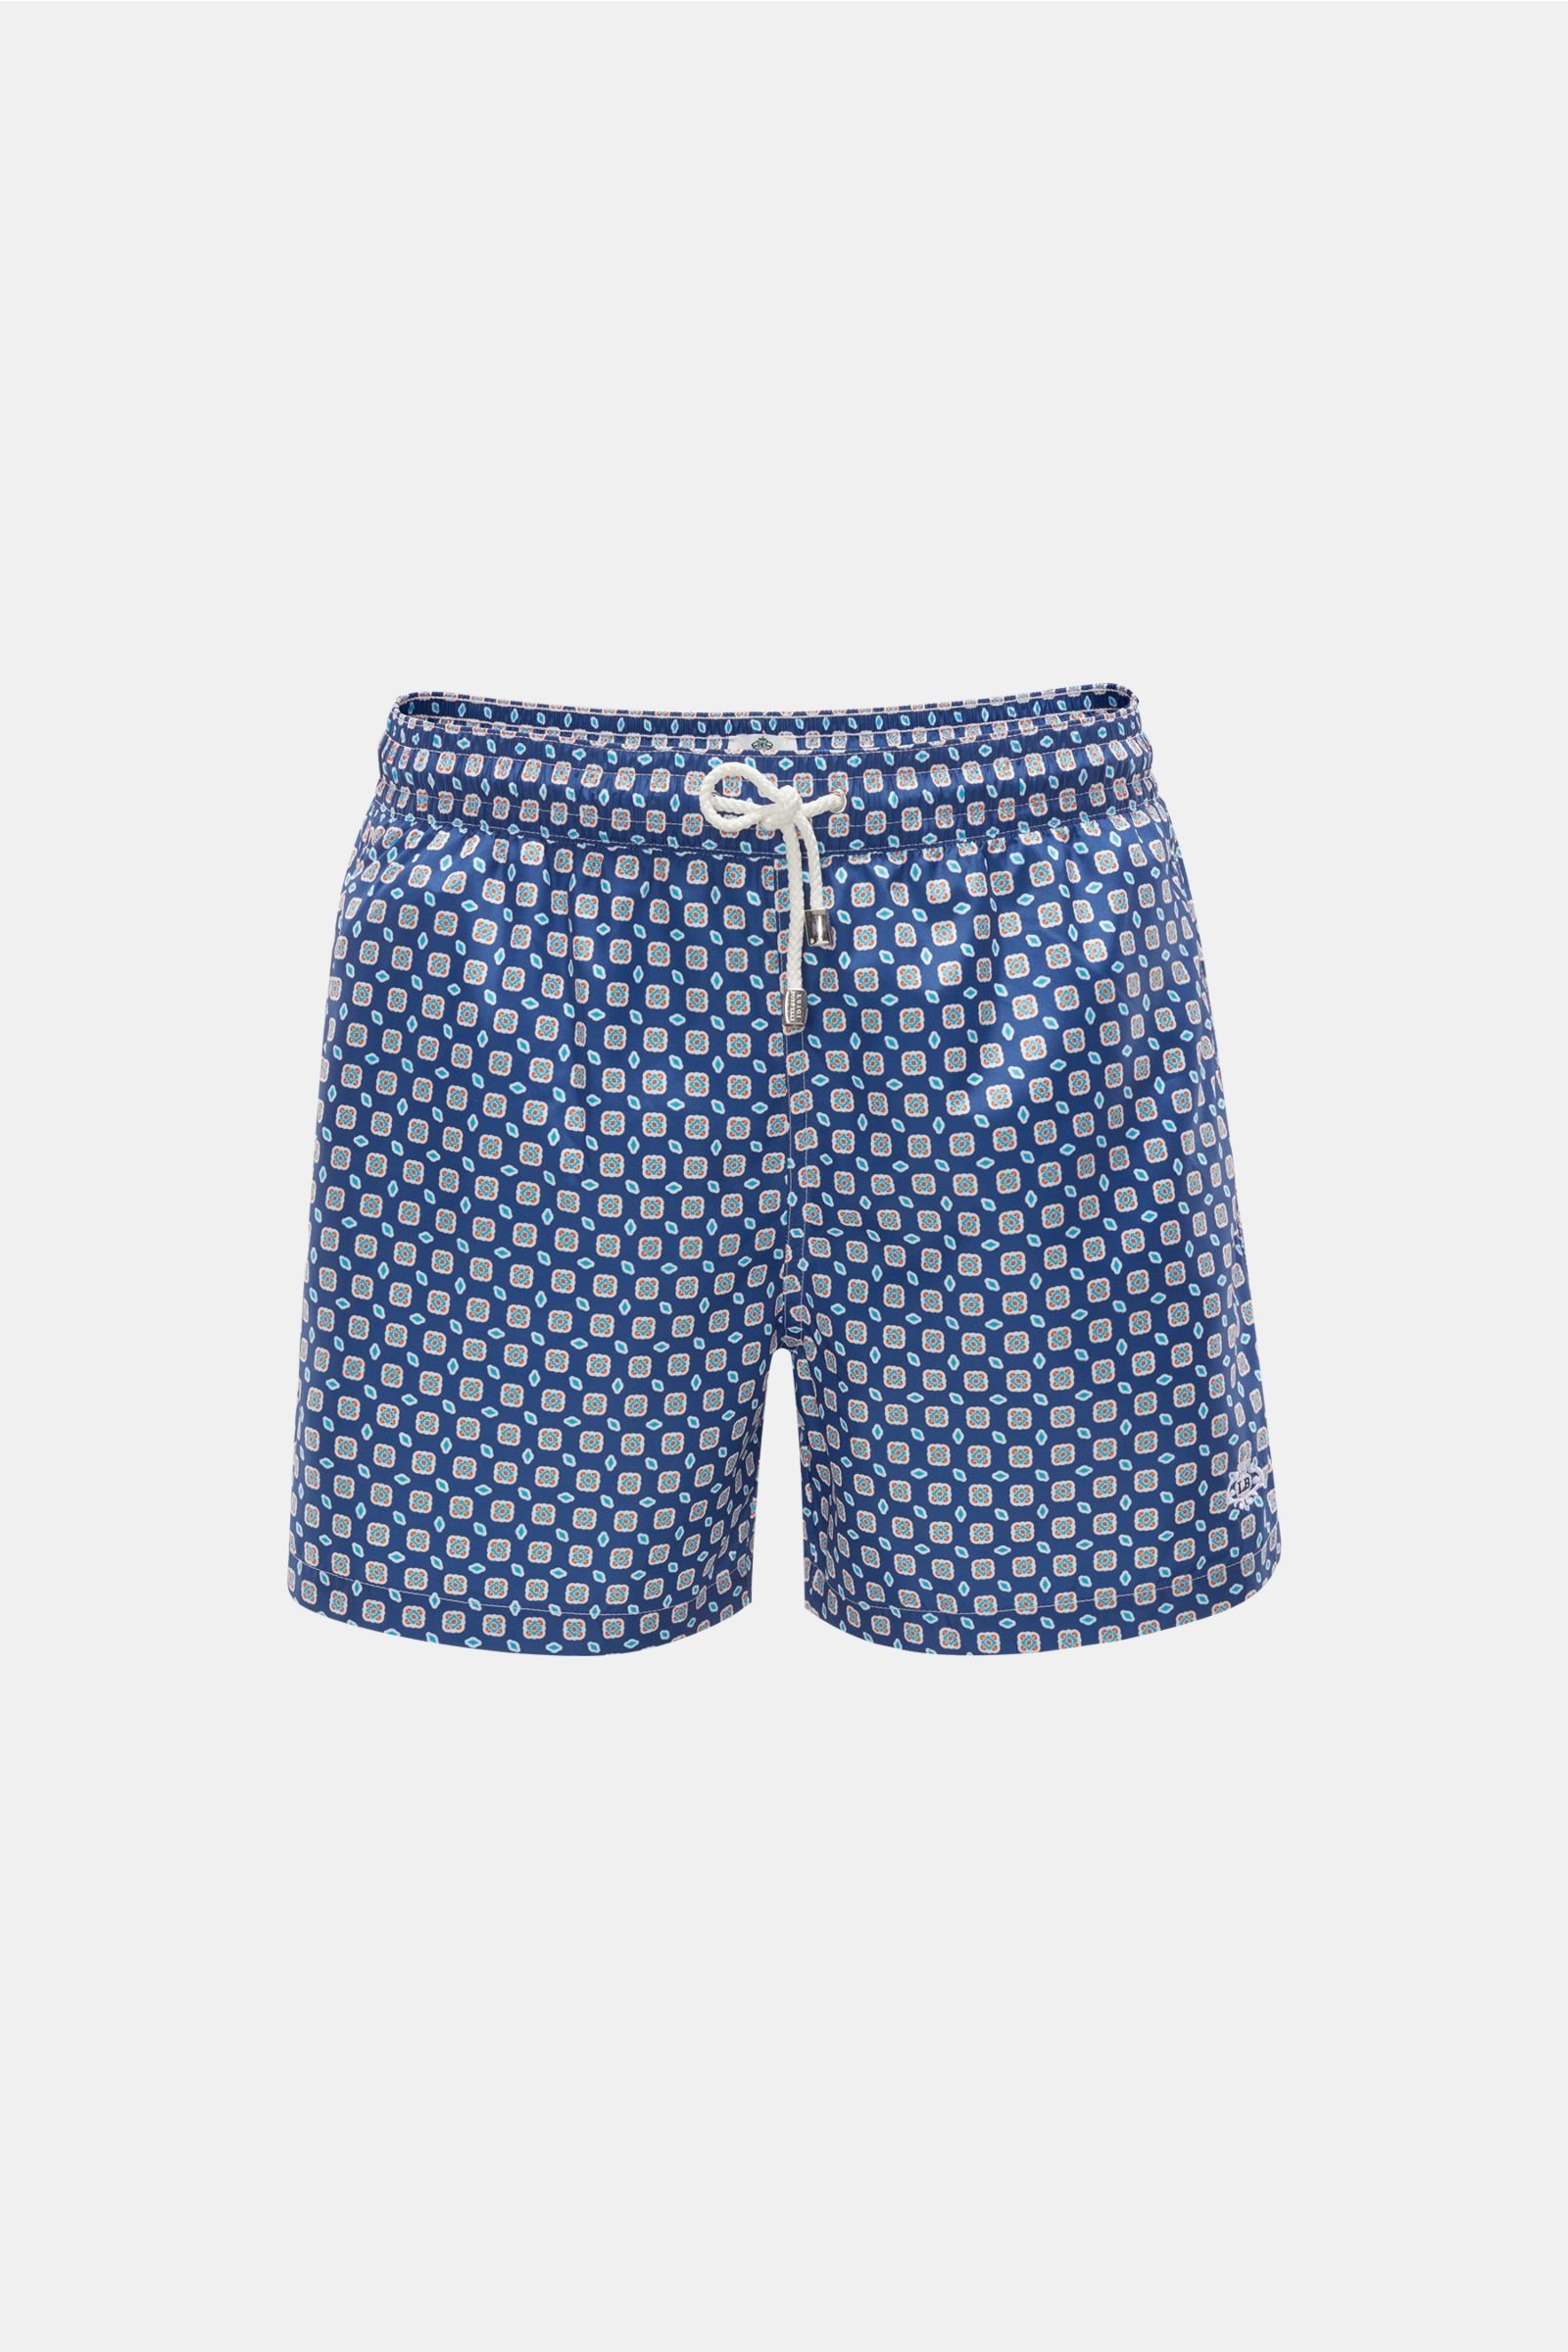 Swim shorts navy/orange patterned